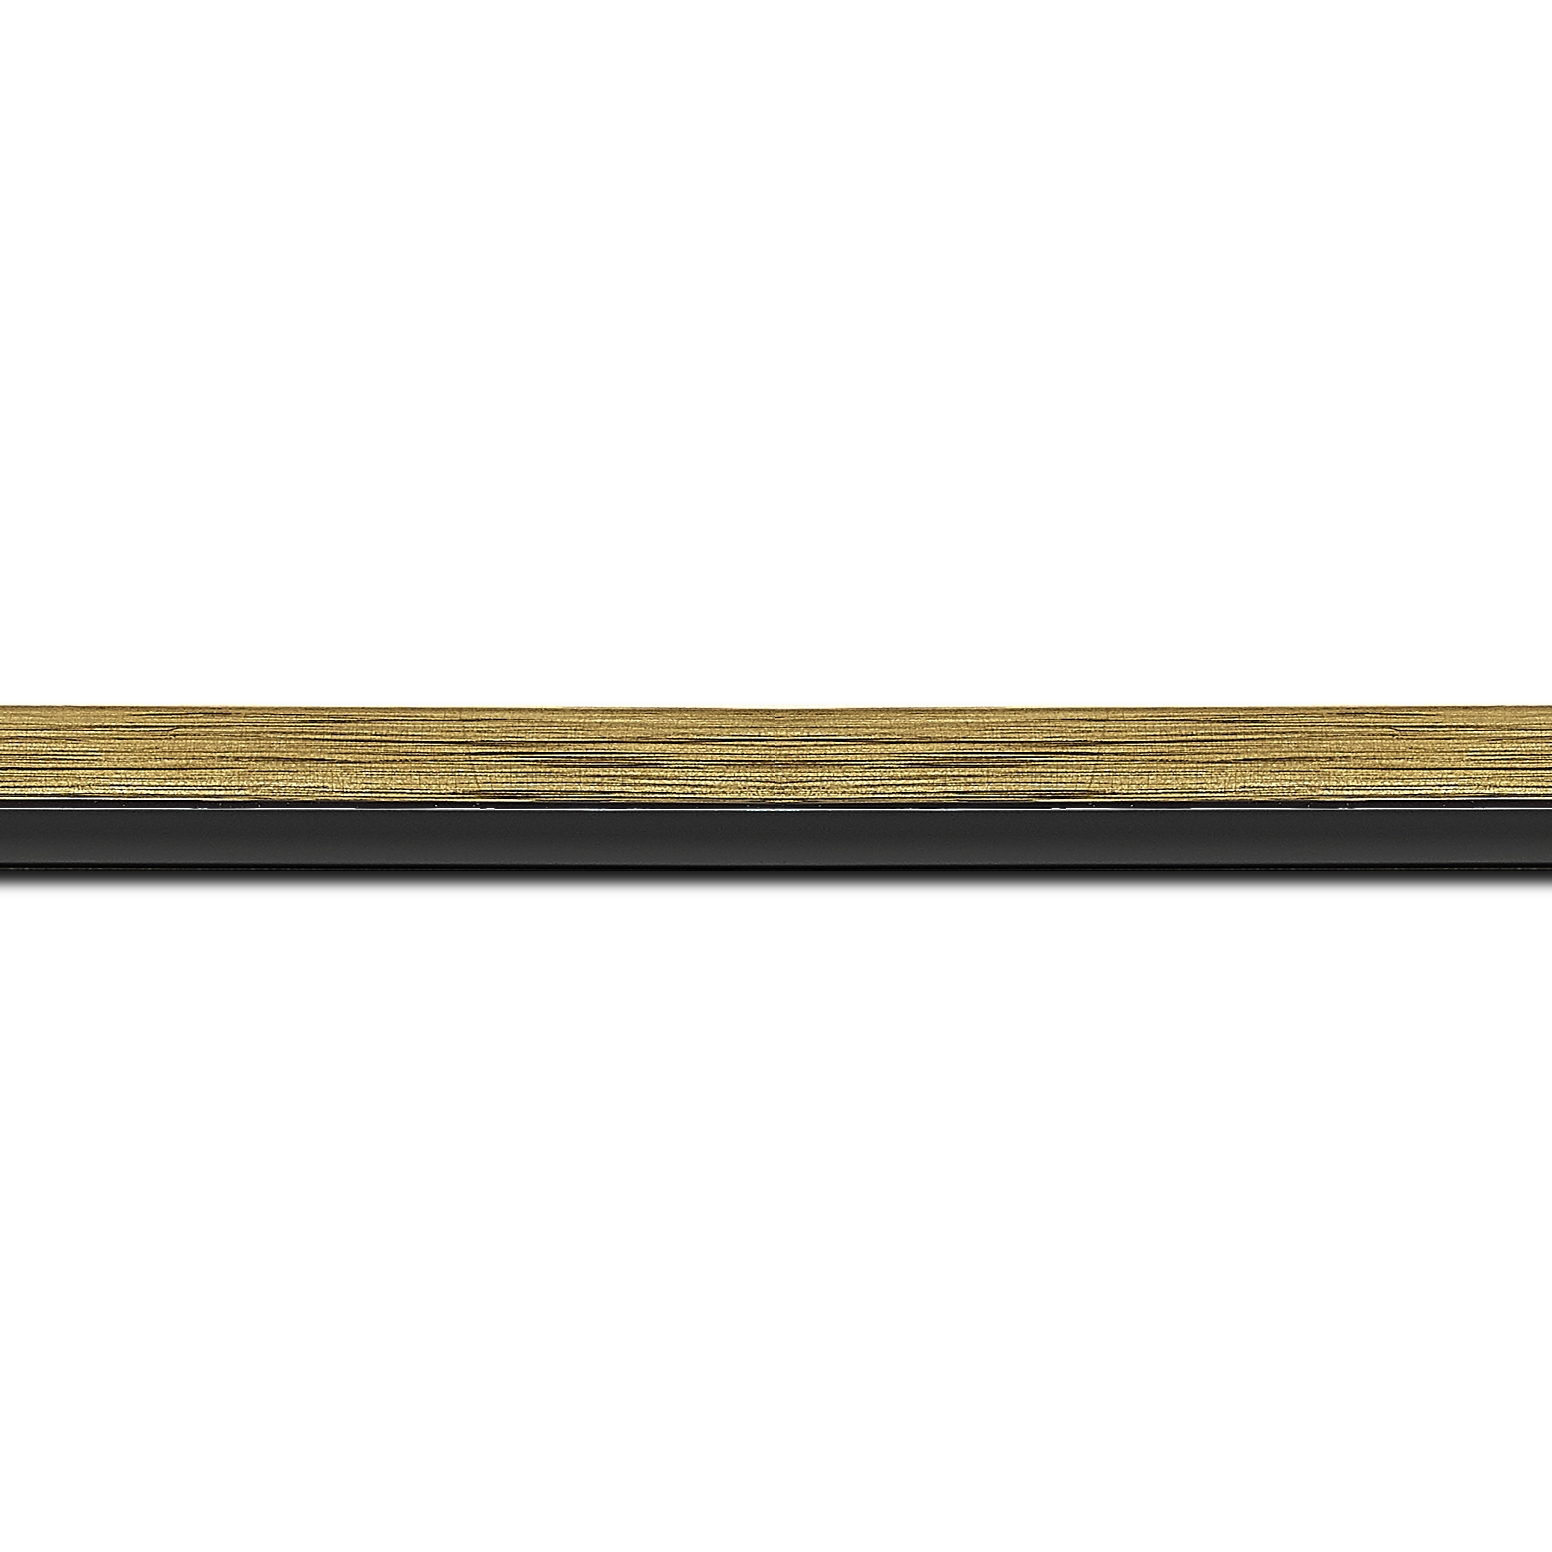 Pack par 12m, bois profil plat largeur 1.6cm couleur or contemporain filet noir en retrait de la face du cadre de 6mm assurant un effet très original (longueur baguette pouvant varier entre 2.40m et 3m selon arrivage des bois)